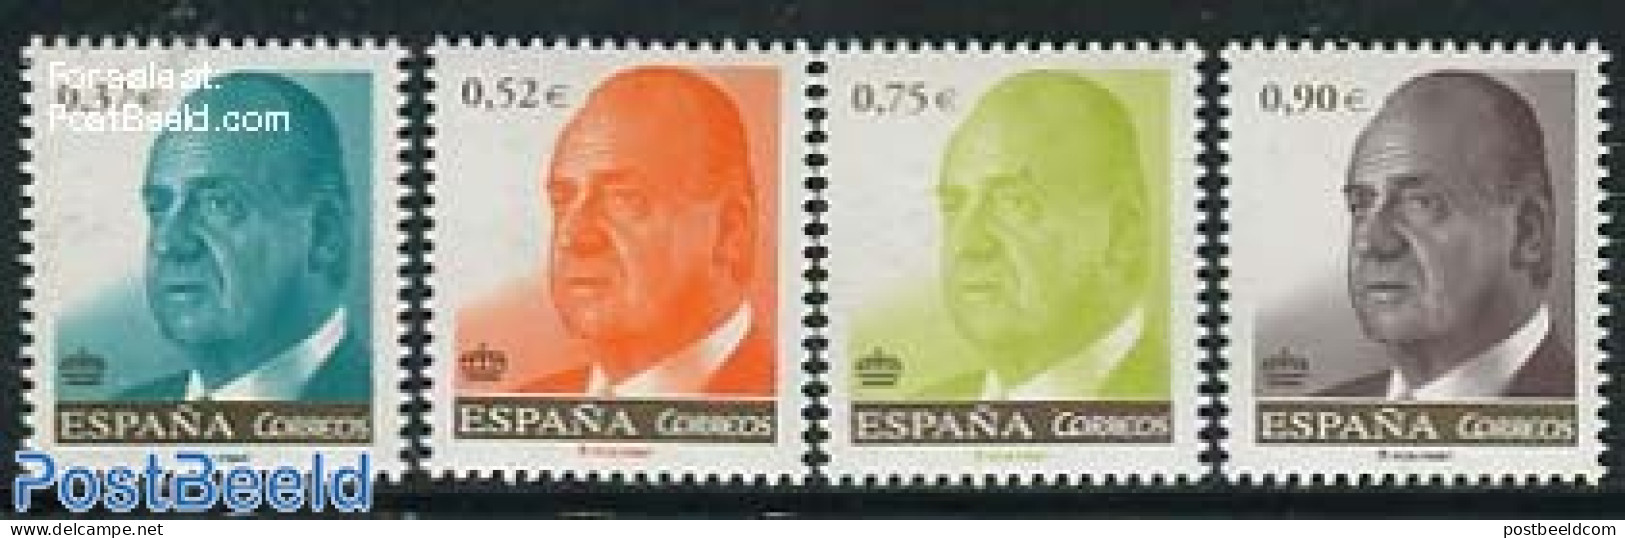 Spain 2013 Definitives, Juan Carlos 4v, Mint NH - Nuevos